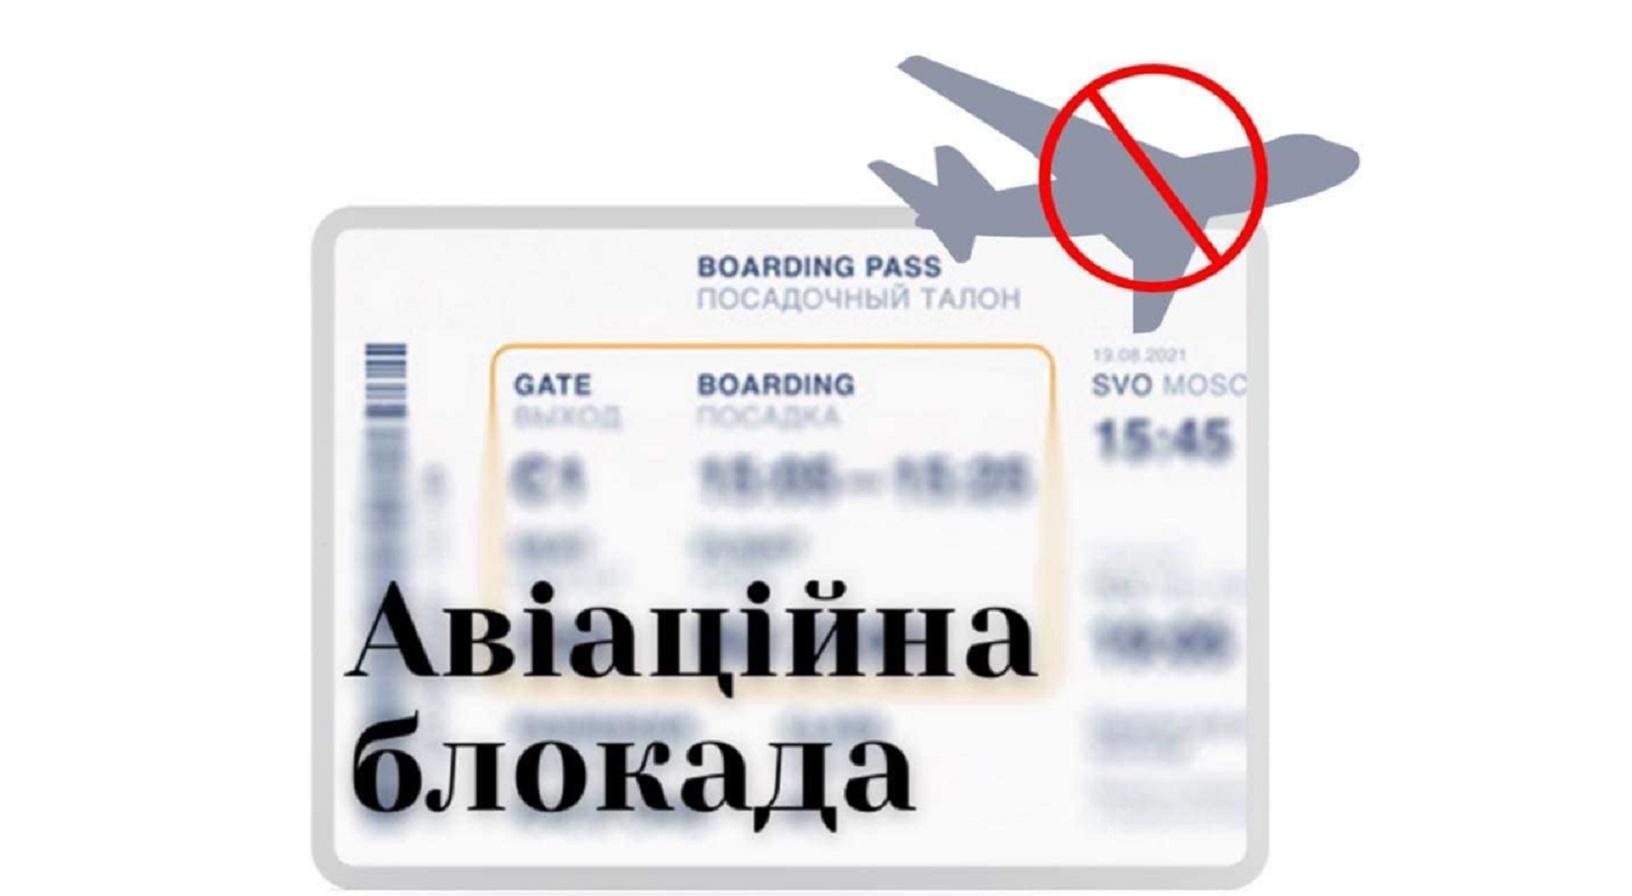 Небо країн Євросоюзу для російських пасажирських літаків зачинилося остаточно, – рішення EASA